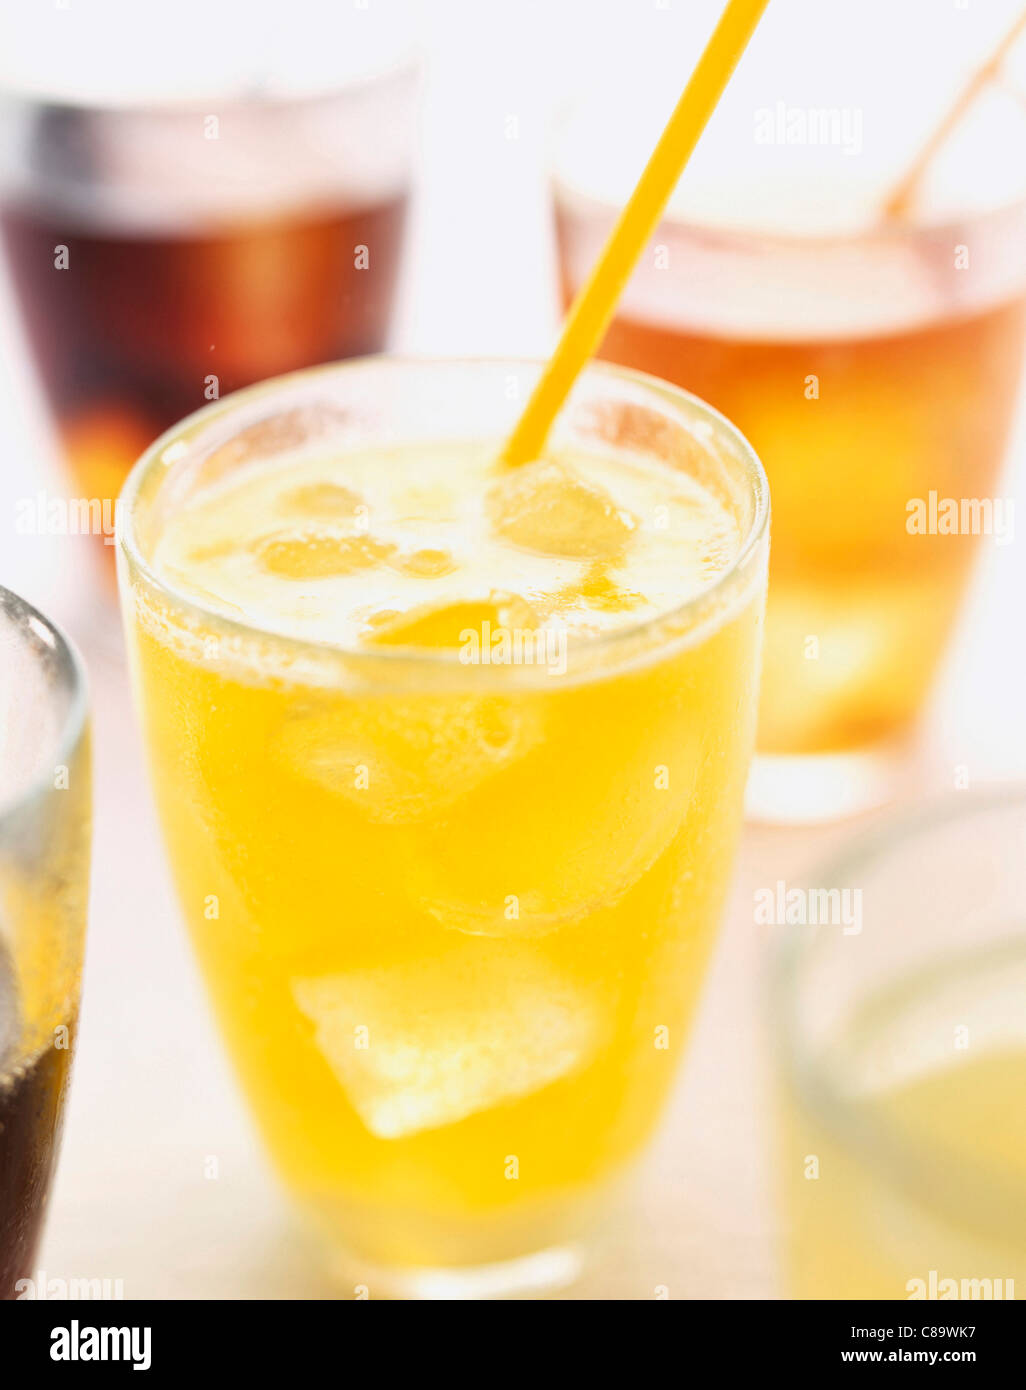 Fizzy drinks Stock Photo